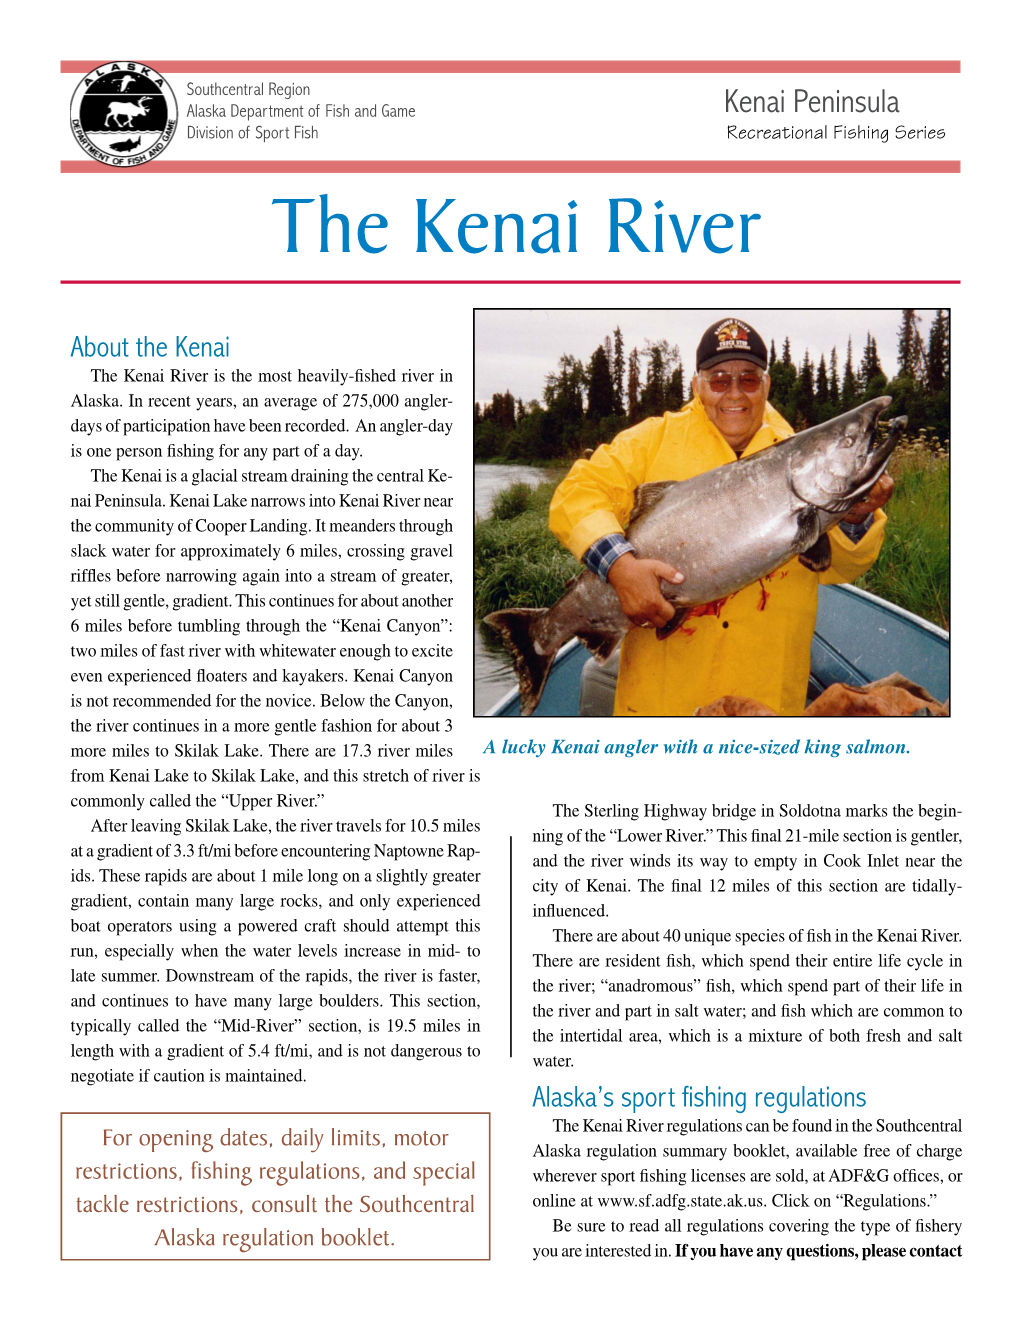 The Kenai River